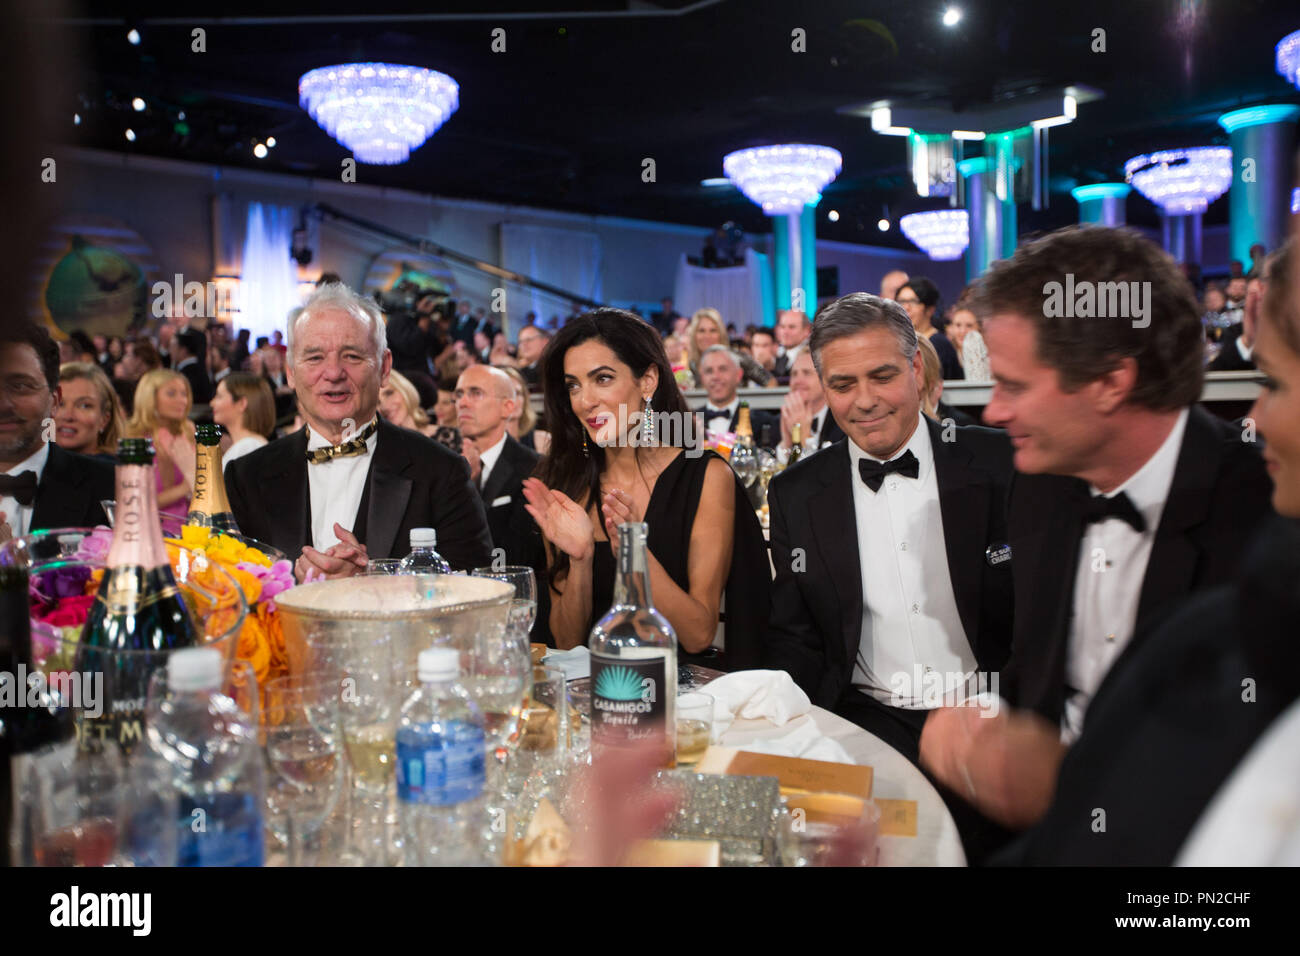 Bill Muray, Amal Clooney, George Clooney und Rande Gerber auf dem 72. jährlichen Golden Globe Awards im Beverly Hilton in Beverly Hills, CA am Sonntag, 11. Januar 2015. Datei Referenz # 32536 652 GFS nur für redaktionelle Verwendung - Alle Rechte vorbehalten Stockfoto